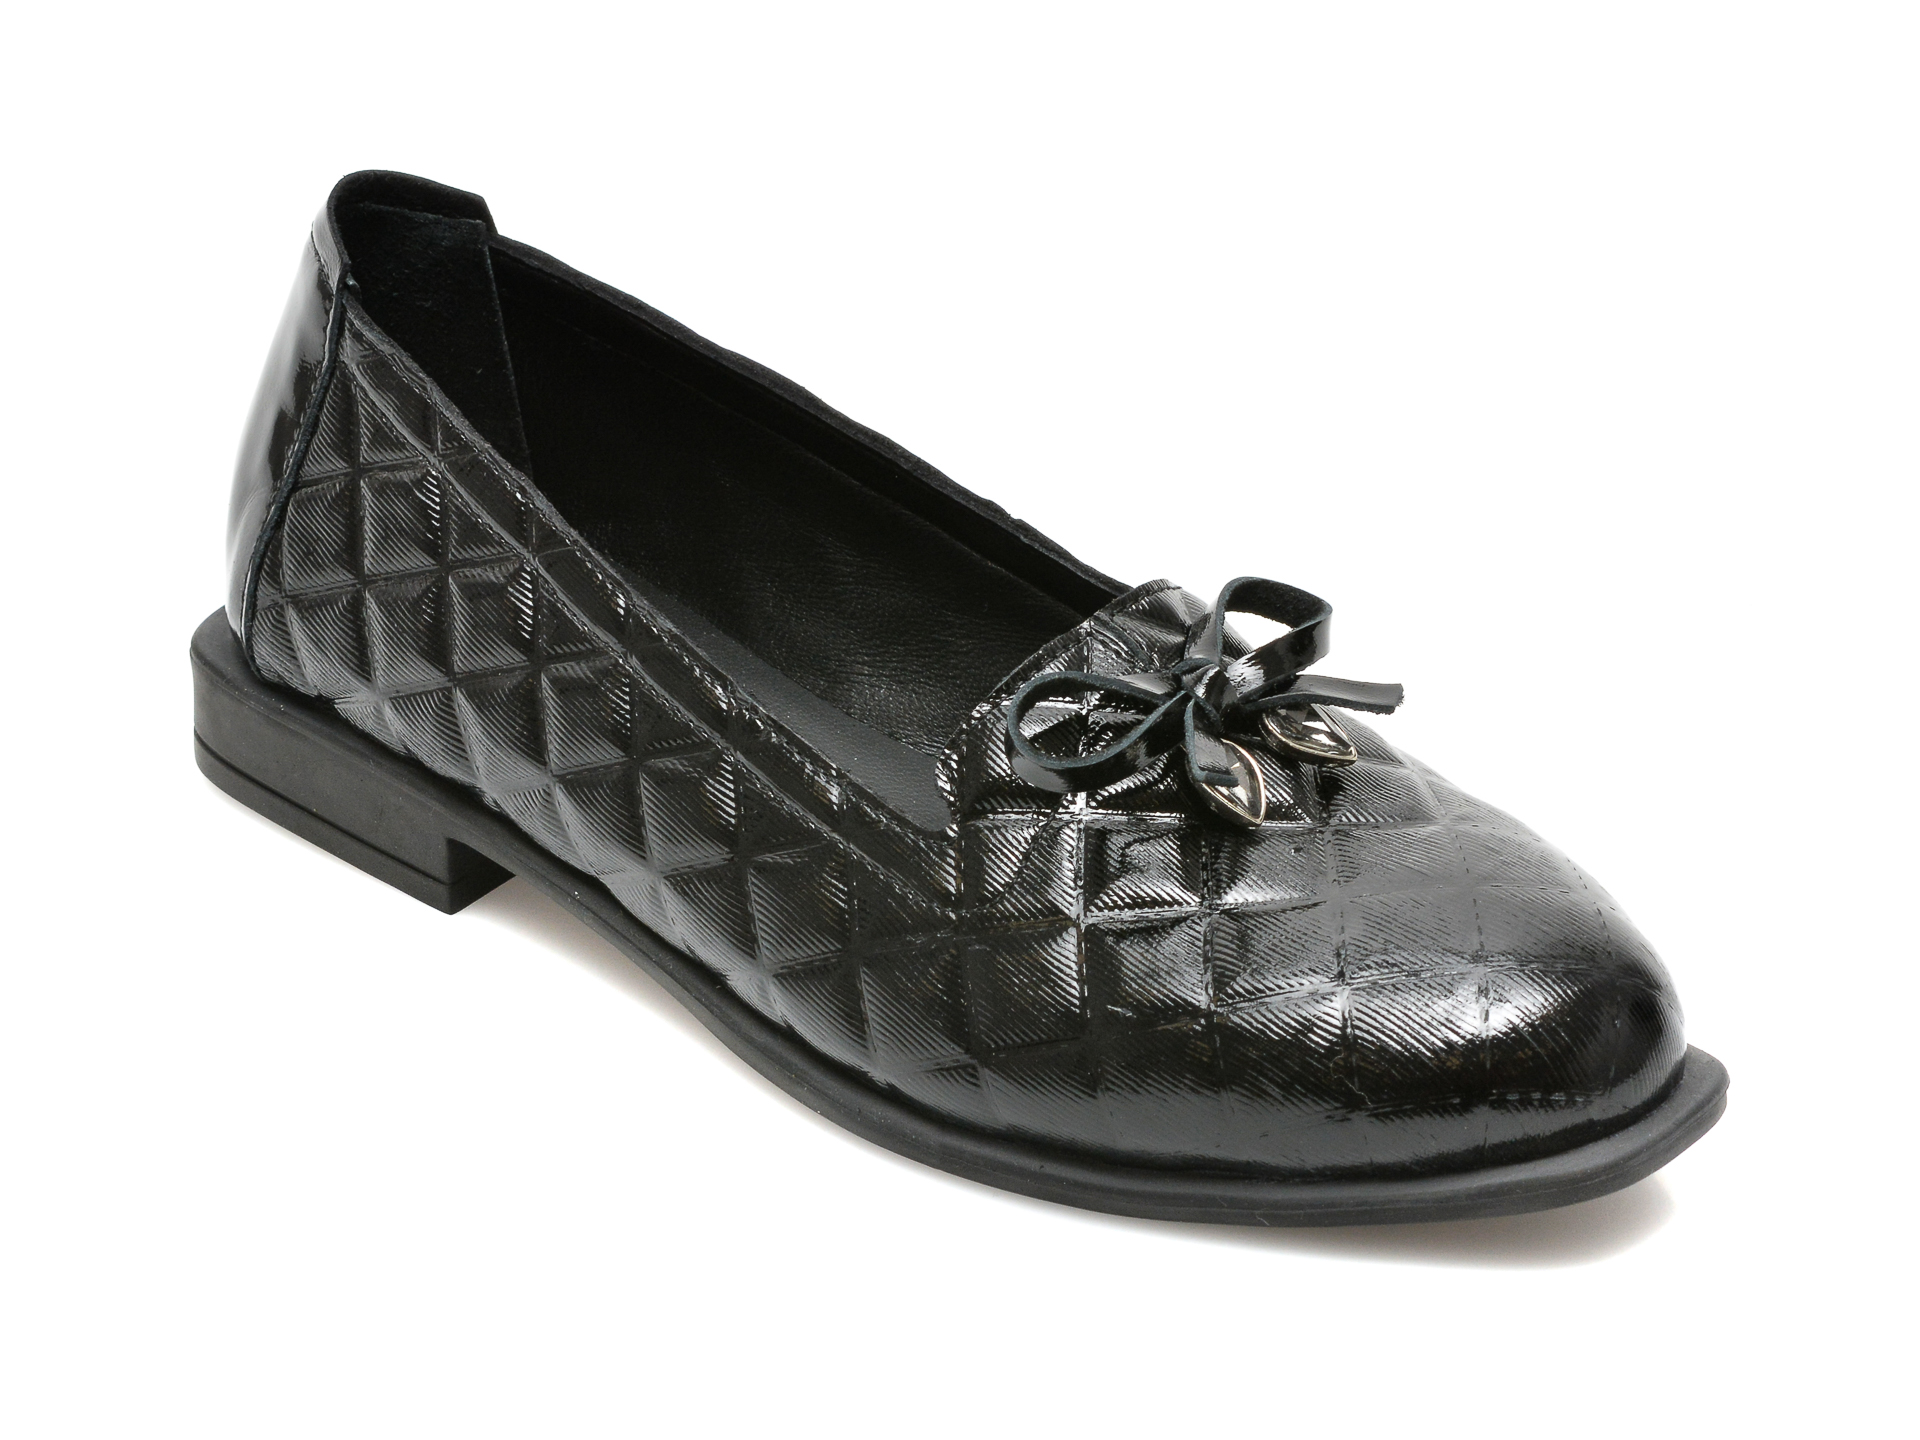 Pantofi FLAVIA PASSINI negri, 9616, din piele naturala lacuita Flavia Passini